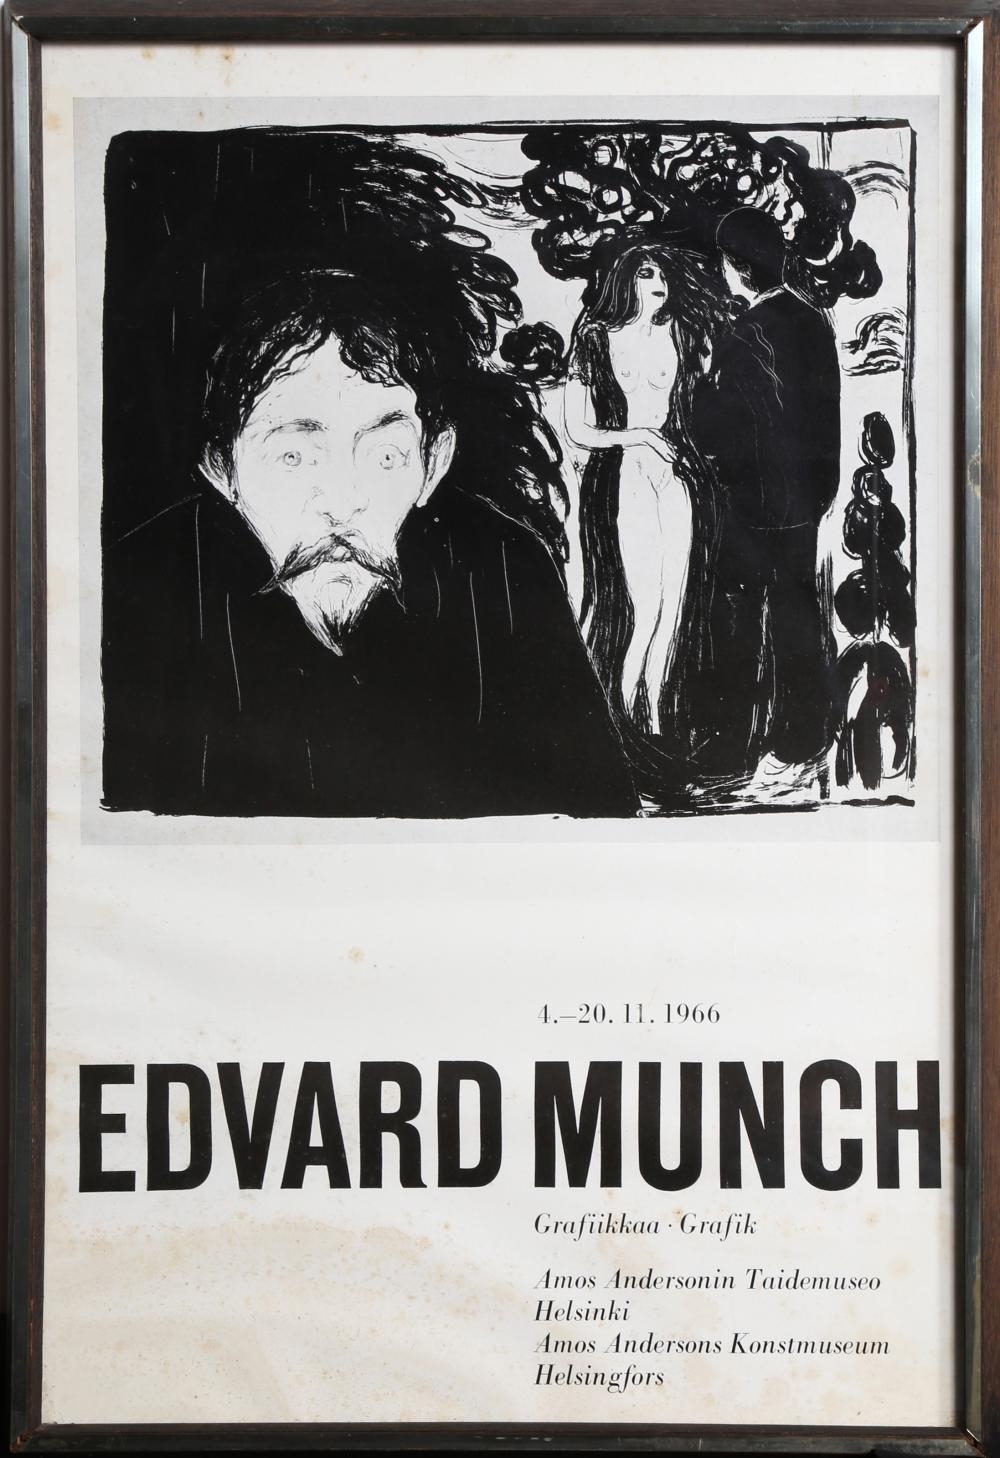 GRAFIK EXHIBITION AMOS ANDERSON KONSTMUSEUM HELSINKI - Edvard Munch